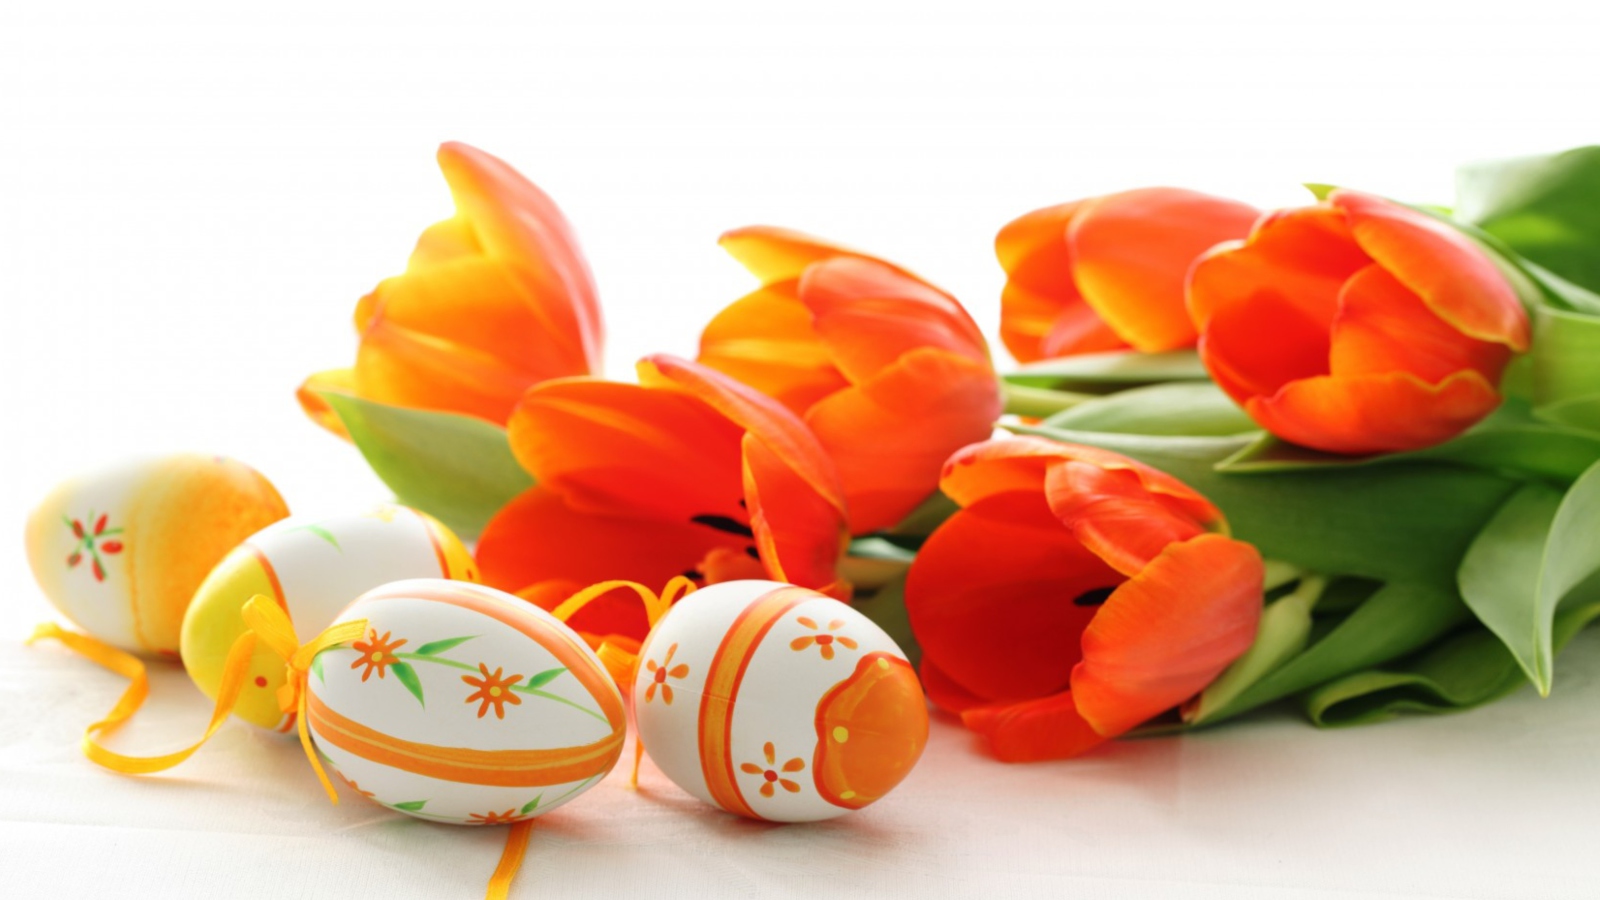 Обои Eggs And Tulips 1600x900